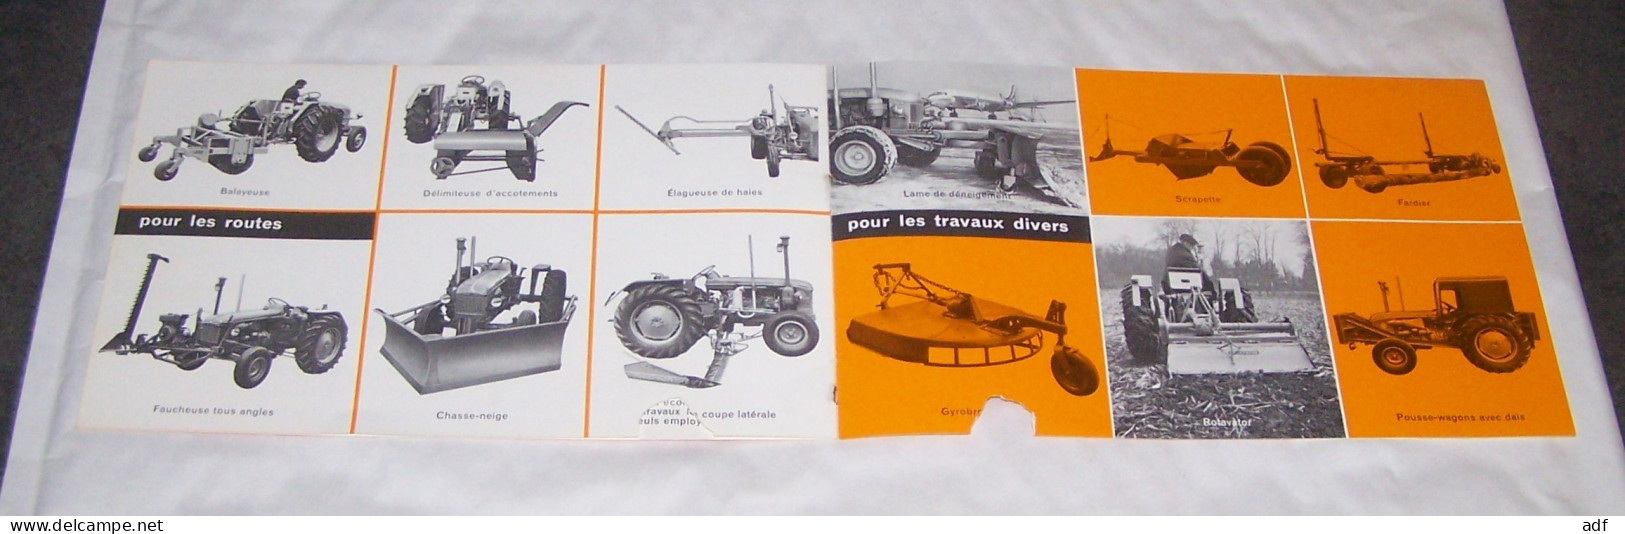 LIVRET PUB PUBLICITAIRE TRACTEURS RENAULT, TRACTEUR RENAULT P70 P 70, TRAVAUX PUBLICS PONTS ET CHAUSSEES - Tractores